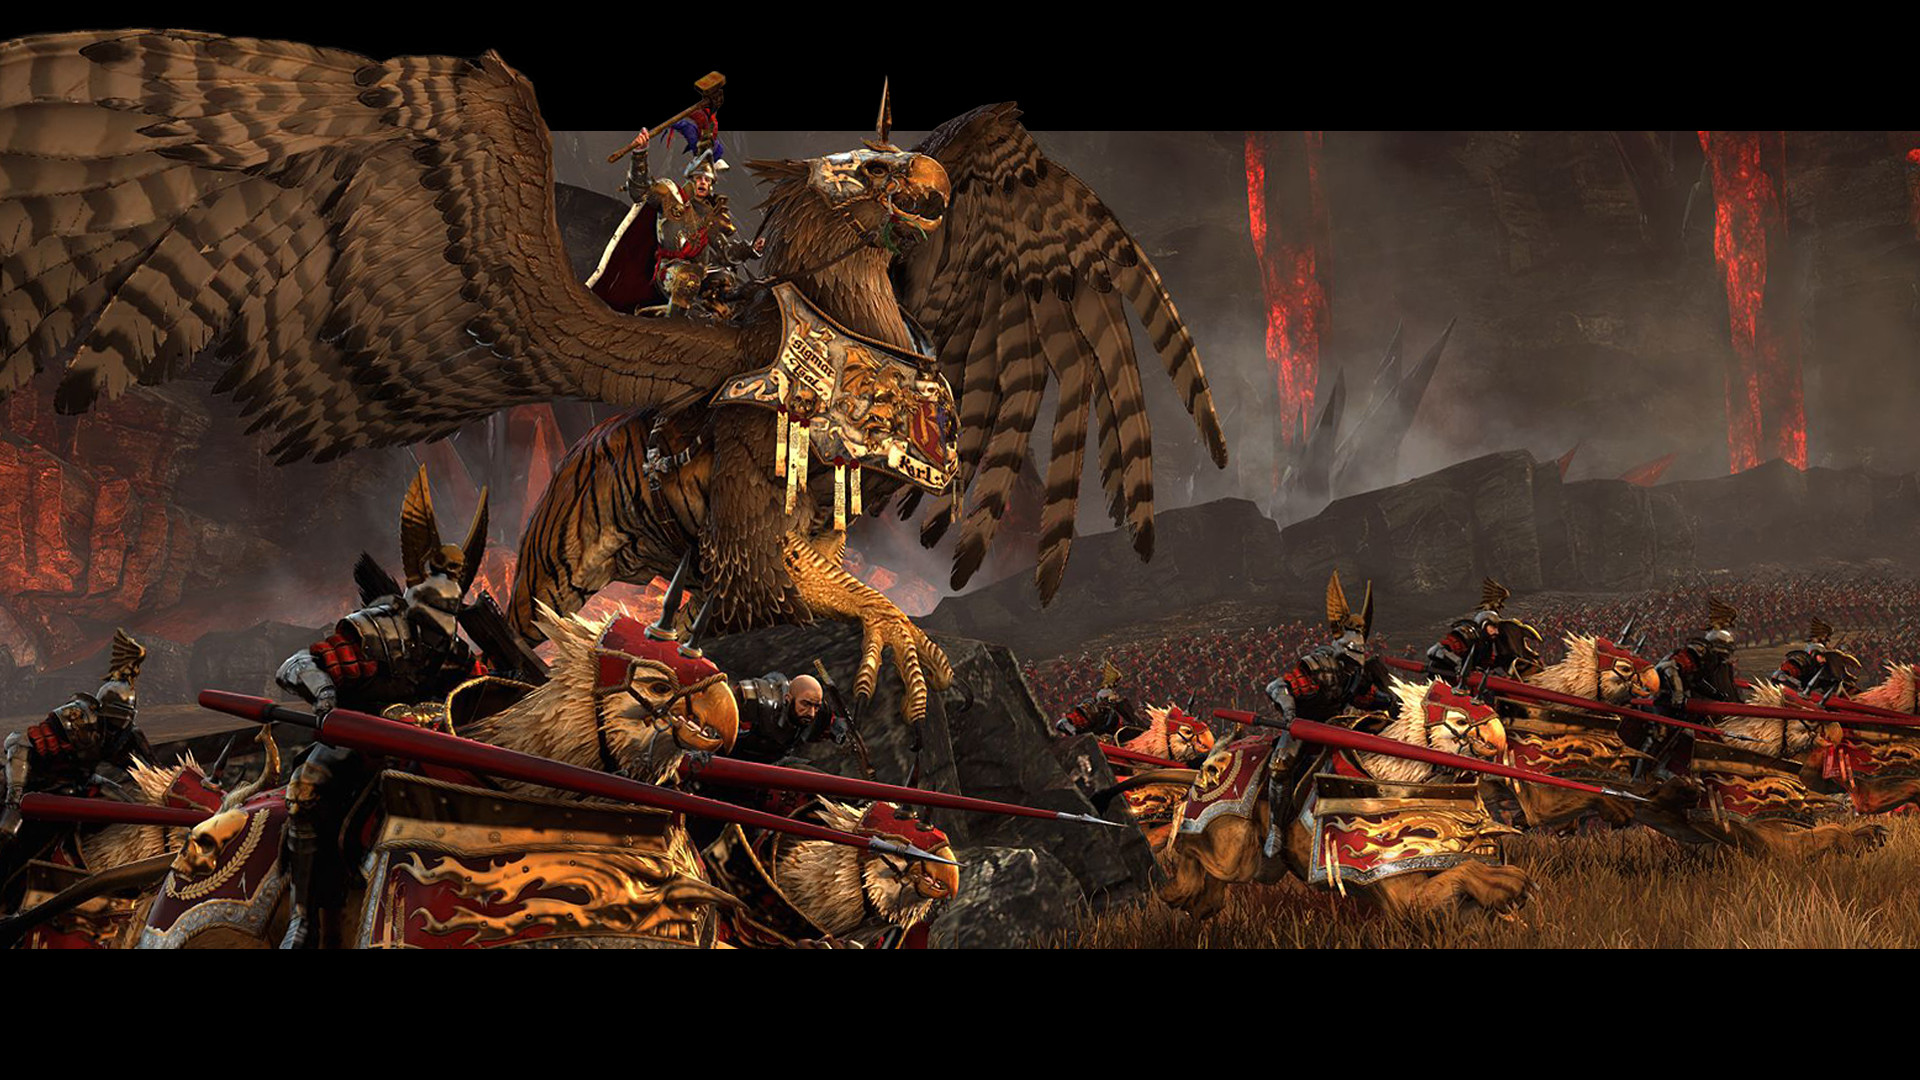 1920x1080 Total War: Warhammer Wallpapers hd Total War: Warhammer Backgrounds